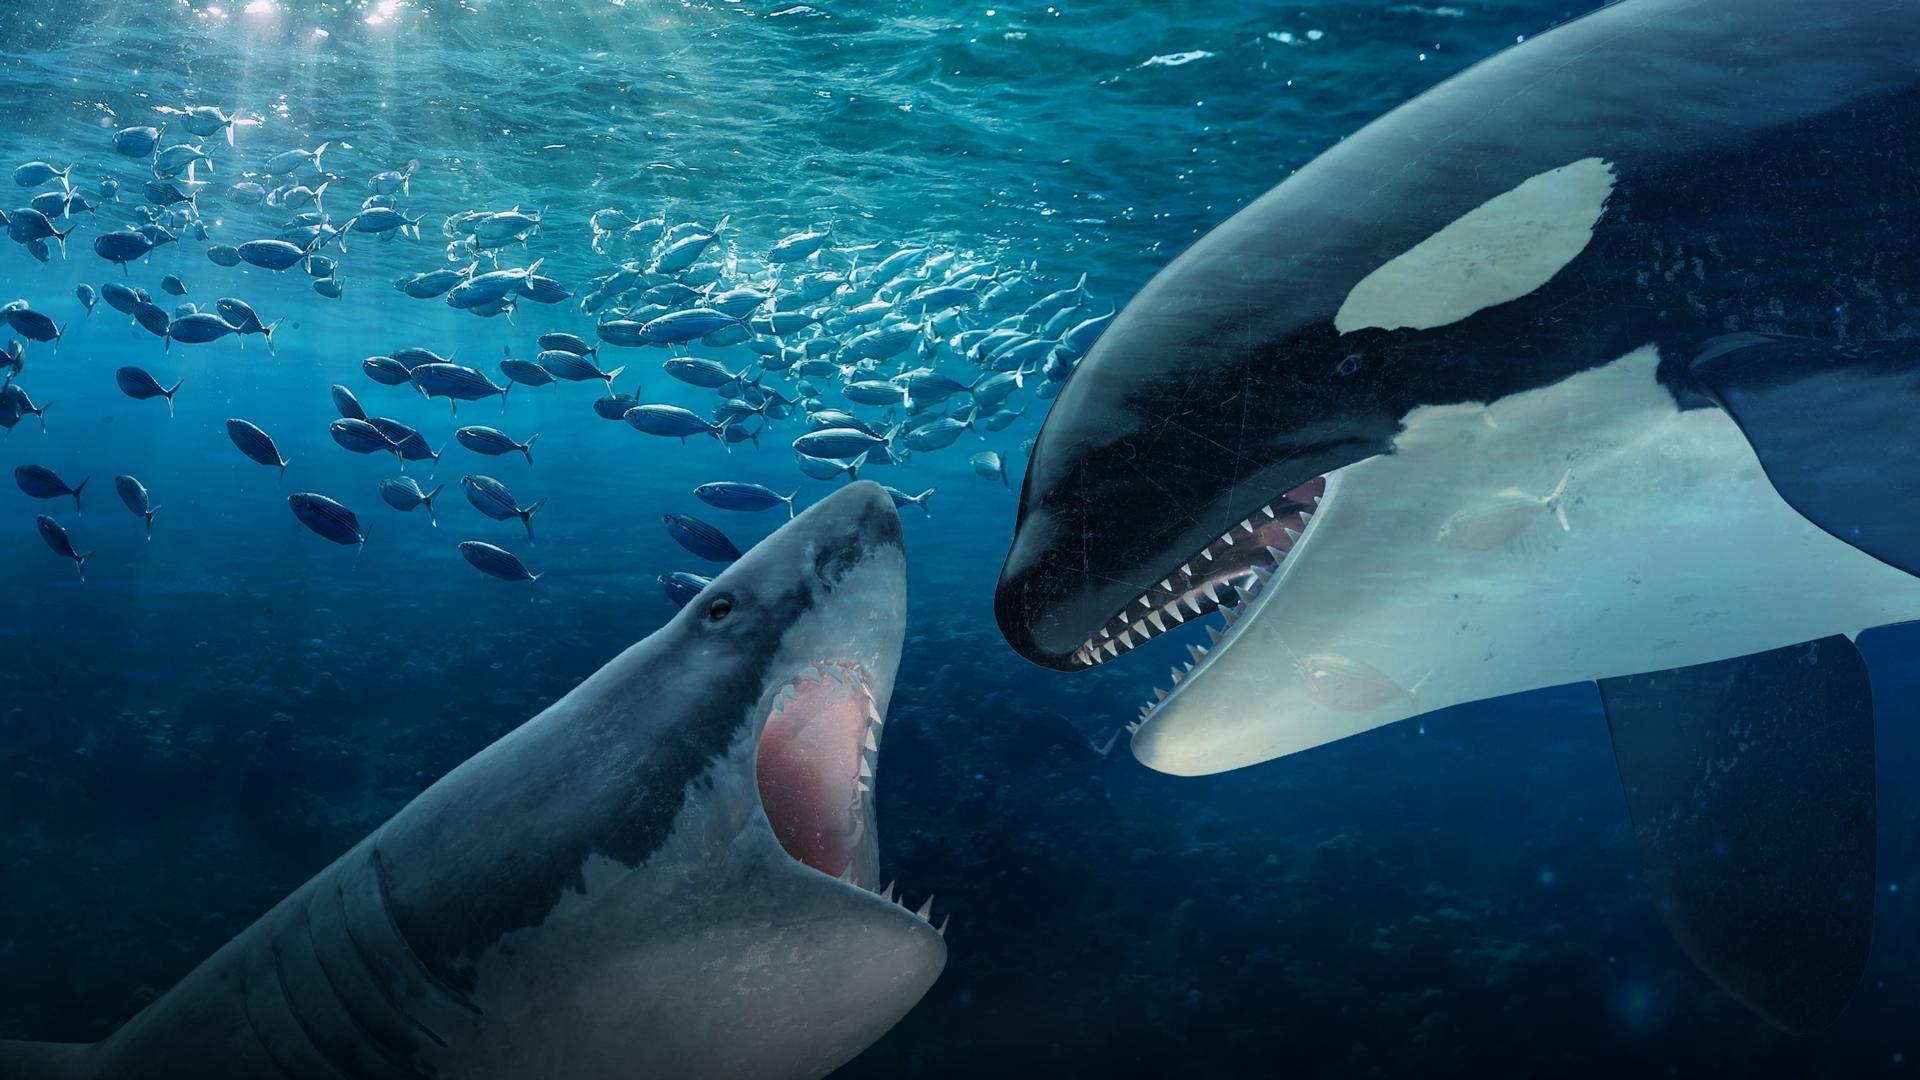 მკვლელი ვეშაპები თეთრი ზვიგენების წინააღმდეგ / Orca vs. Great White